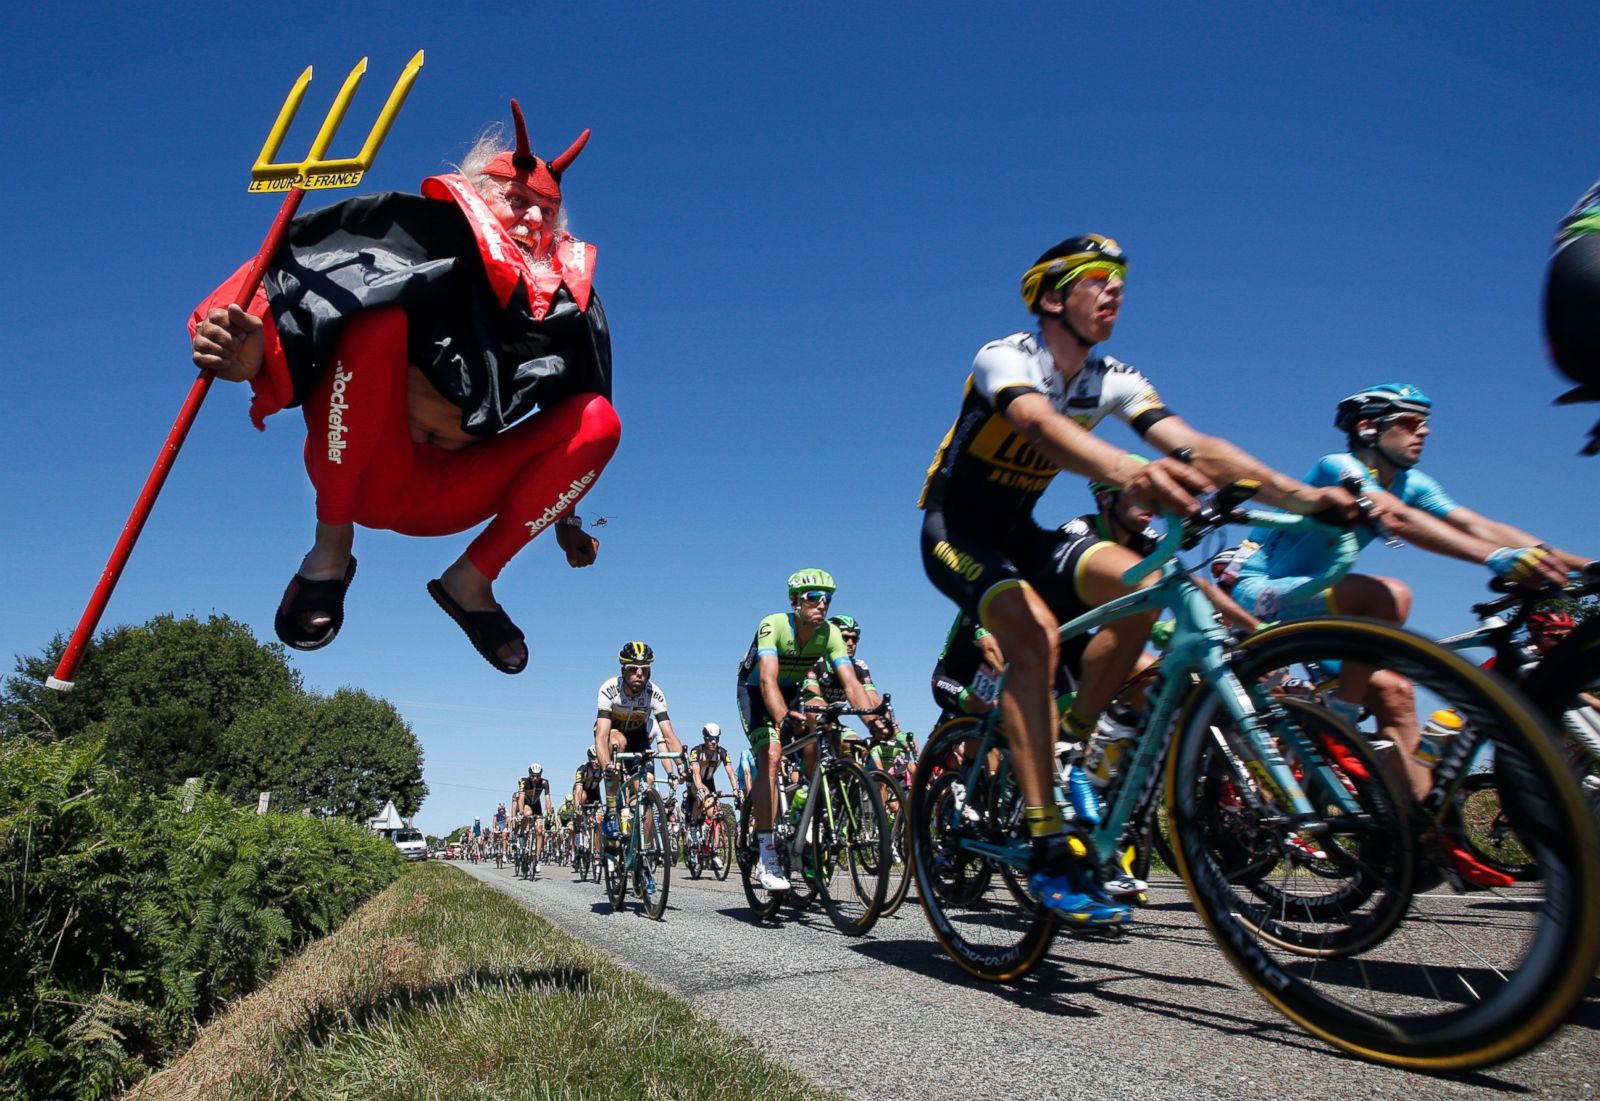 The Crazy Tour de France Fans Photos | Image #1 - ABC News